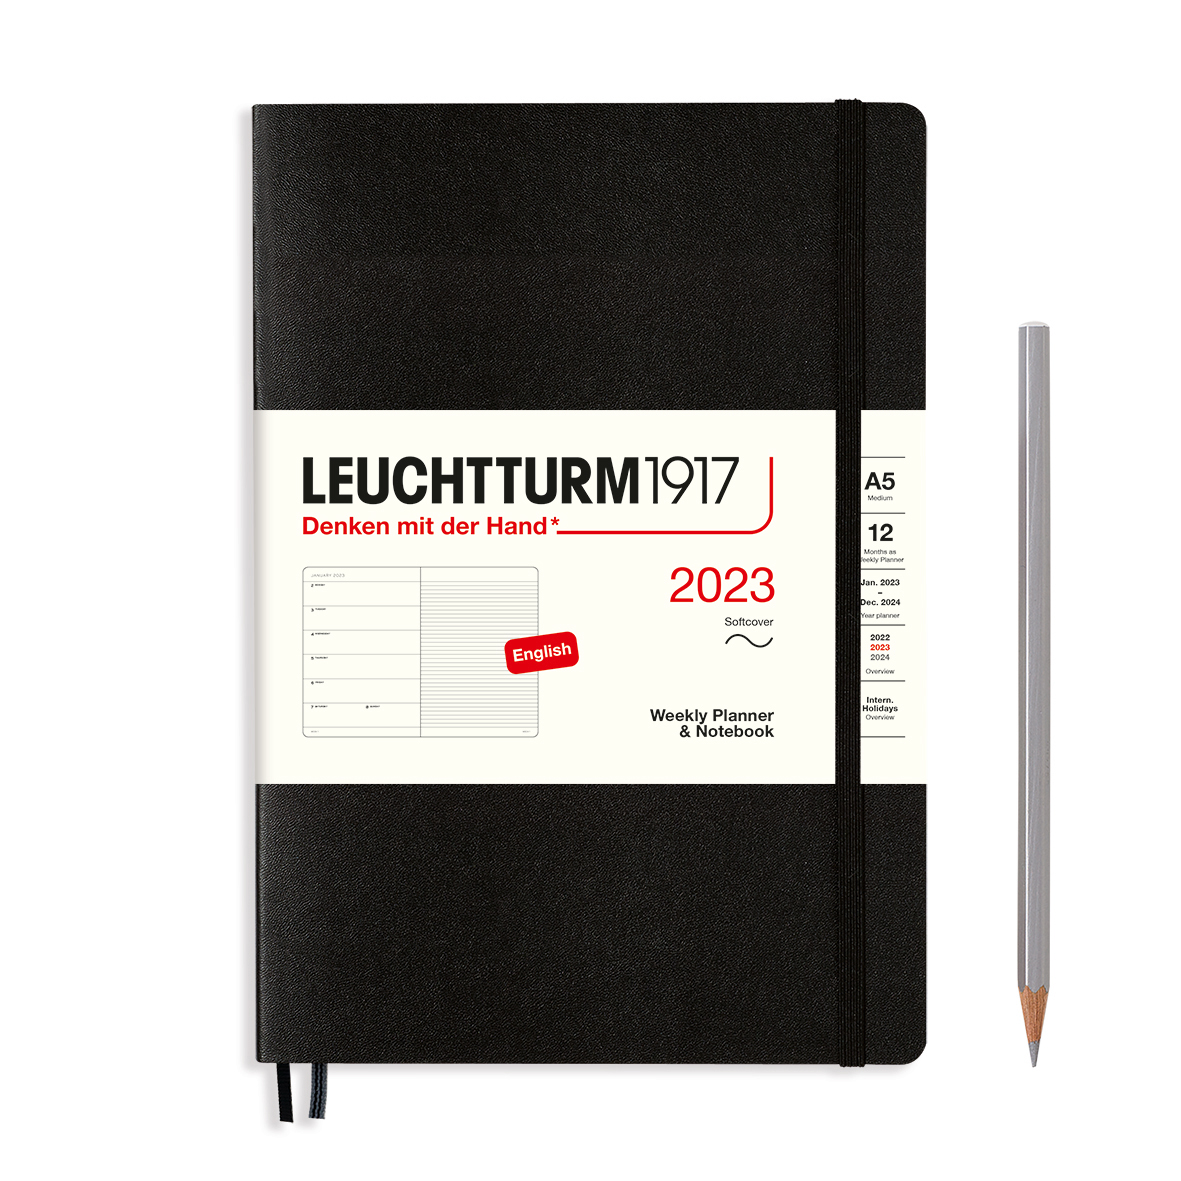 Еженедельник датир. Leuchtturm1917 Medium A5 на 2023г, 72л, м. обл, цвет: Черный Lecht-365901